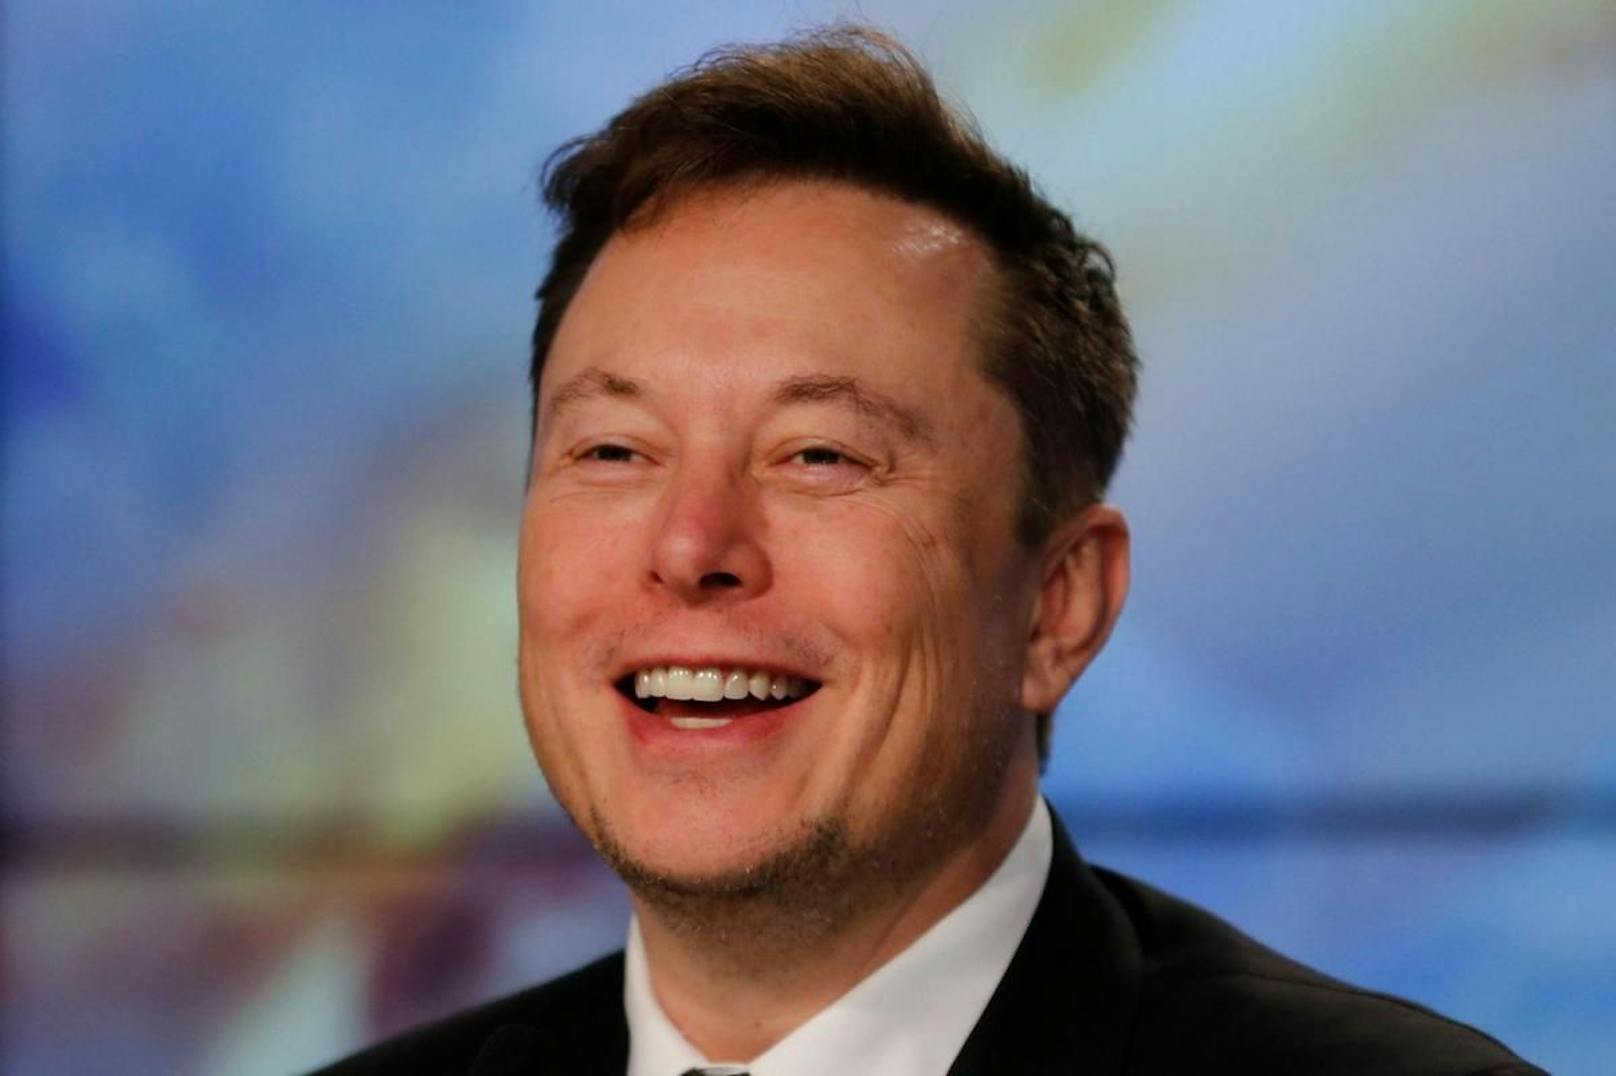 Promis wie Elon Musk bekennen sich öffentlich als Dogecoin-Fans und treiben den Kurs so nach oben.